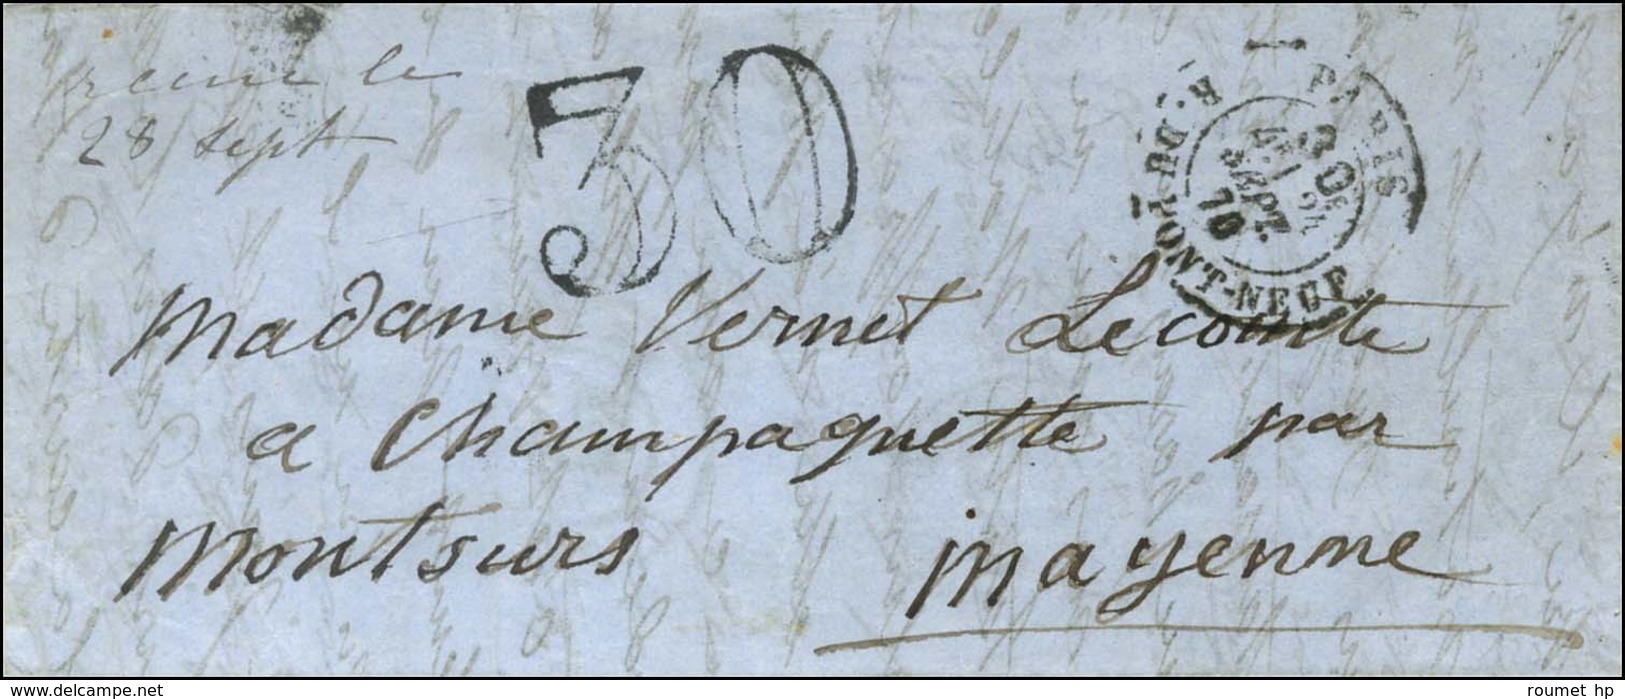 Càd Taxe 30c. PARIS / R. DU PONT-NEUF 24 SEPT. 70 Sur Lettre Pour Montsurs, Au Recto Taxe 30 DT, Au Verso Càd De Passage - War 1870